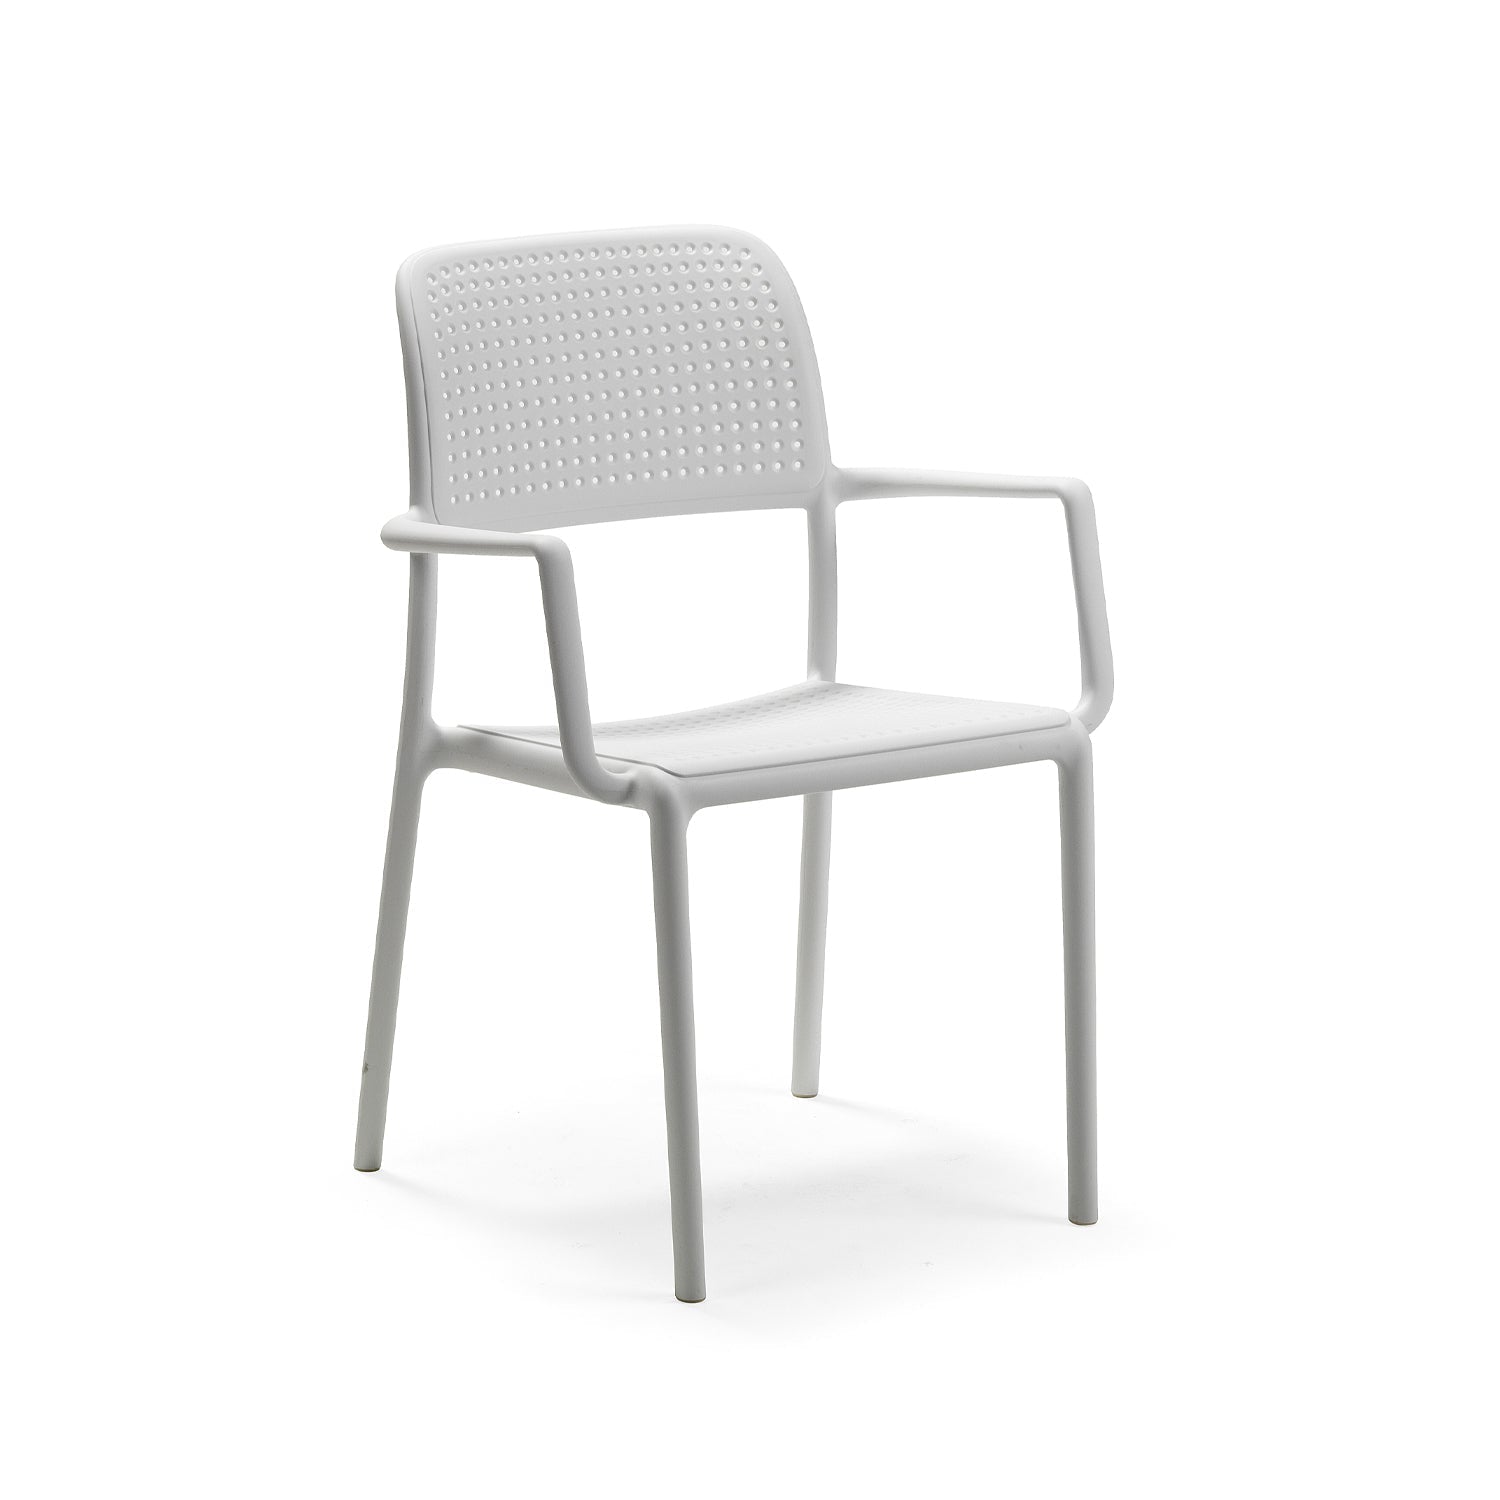 Bora Garden Chair By Nardi In White